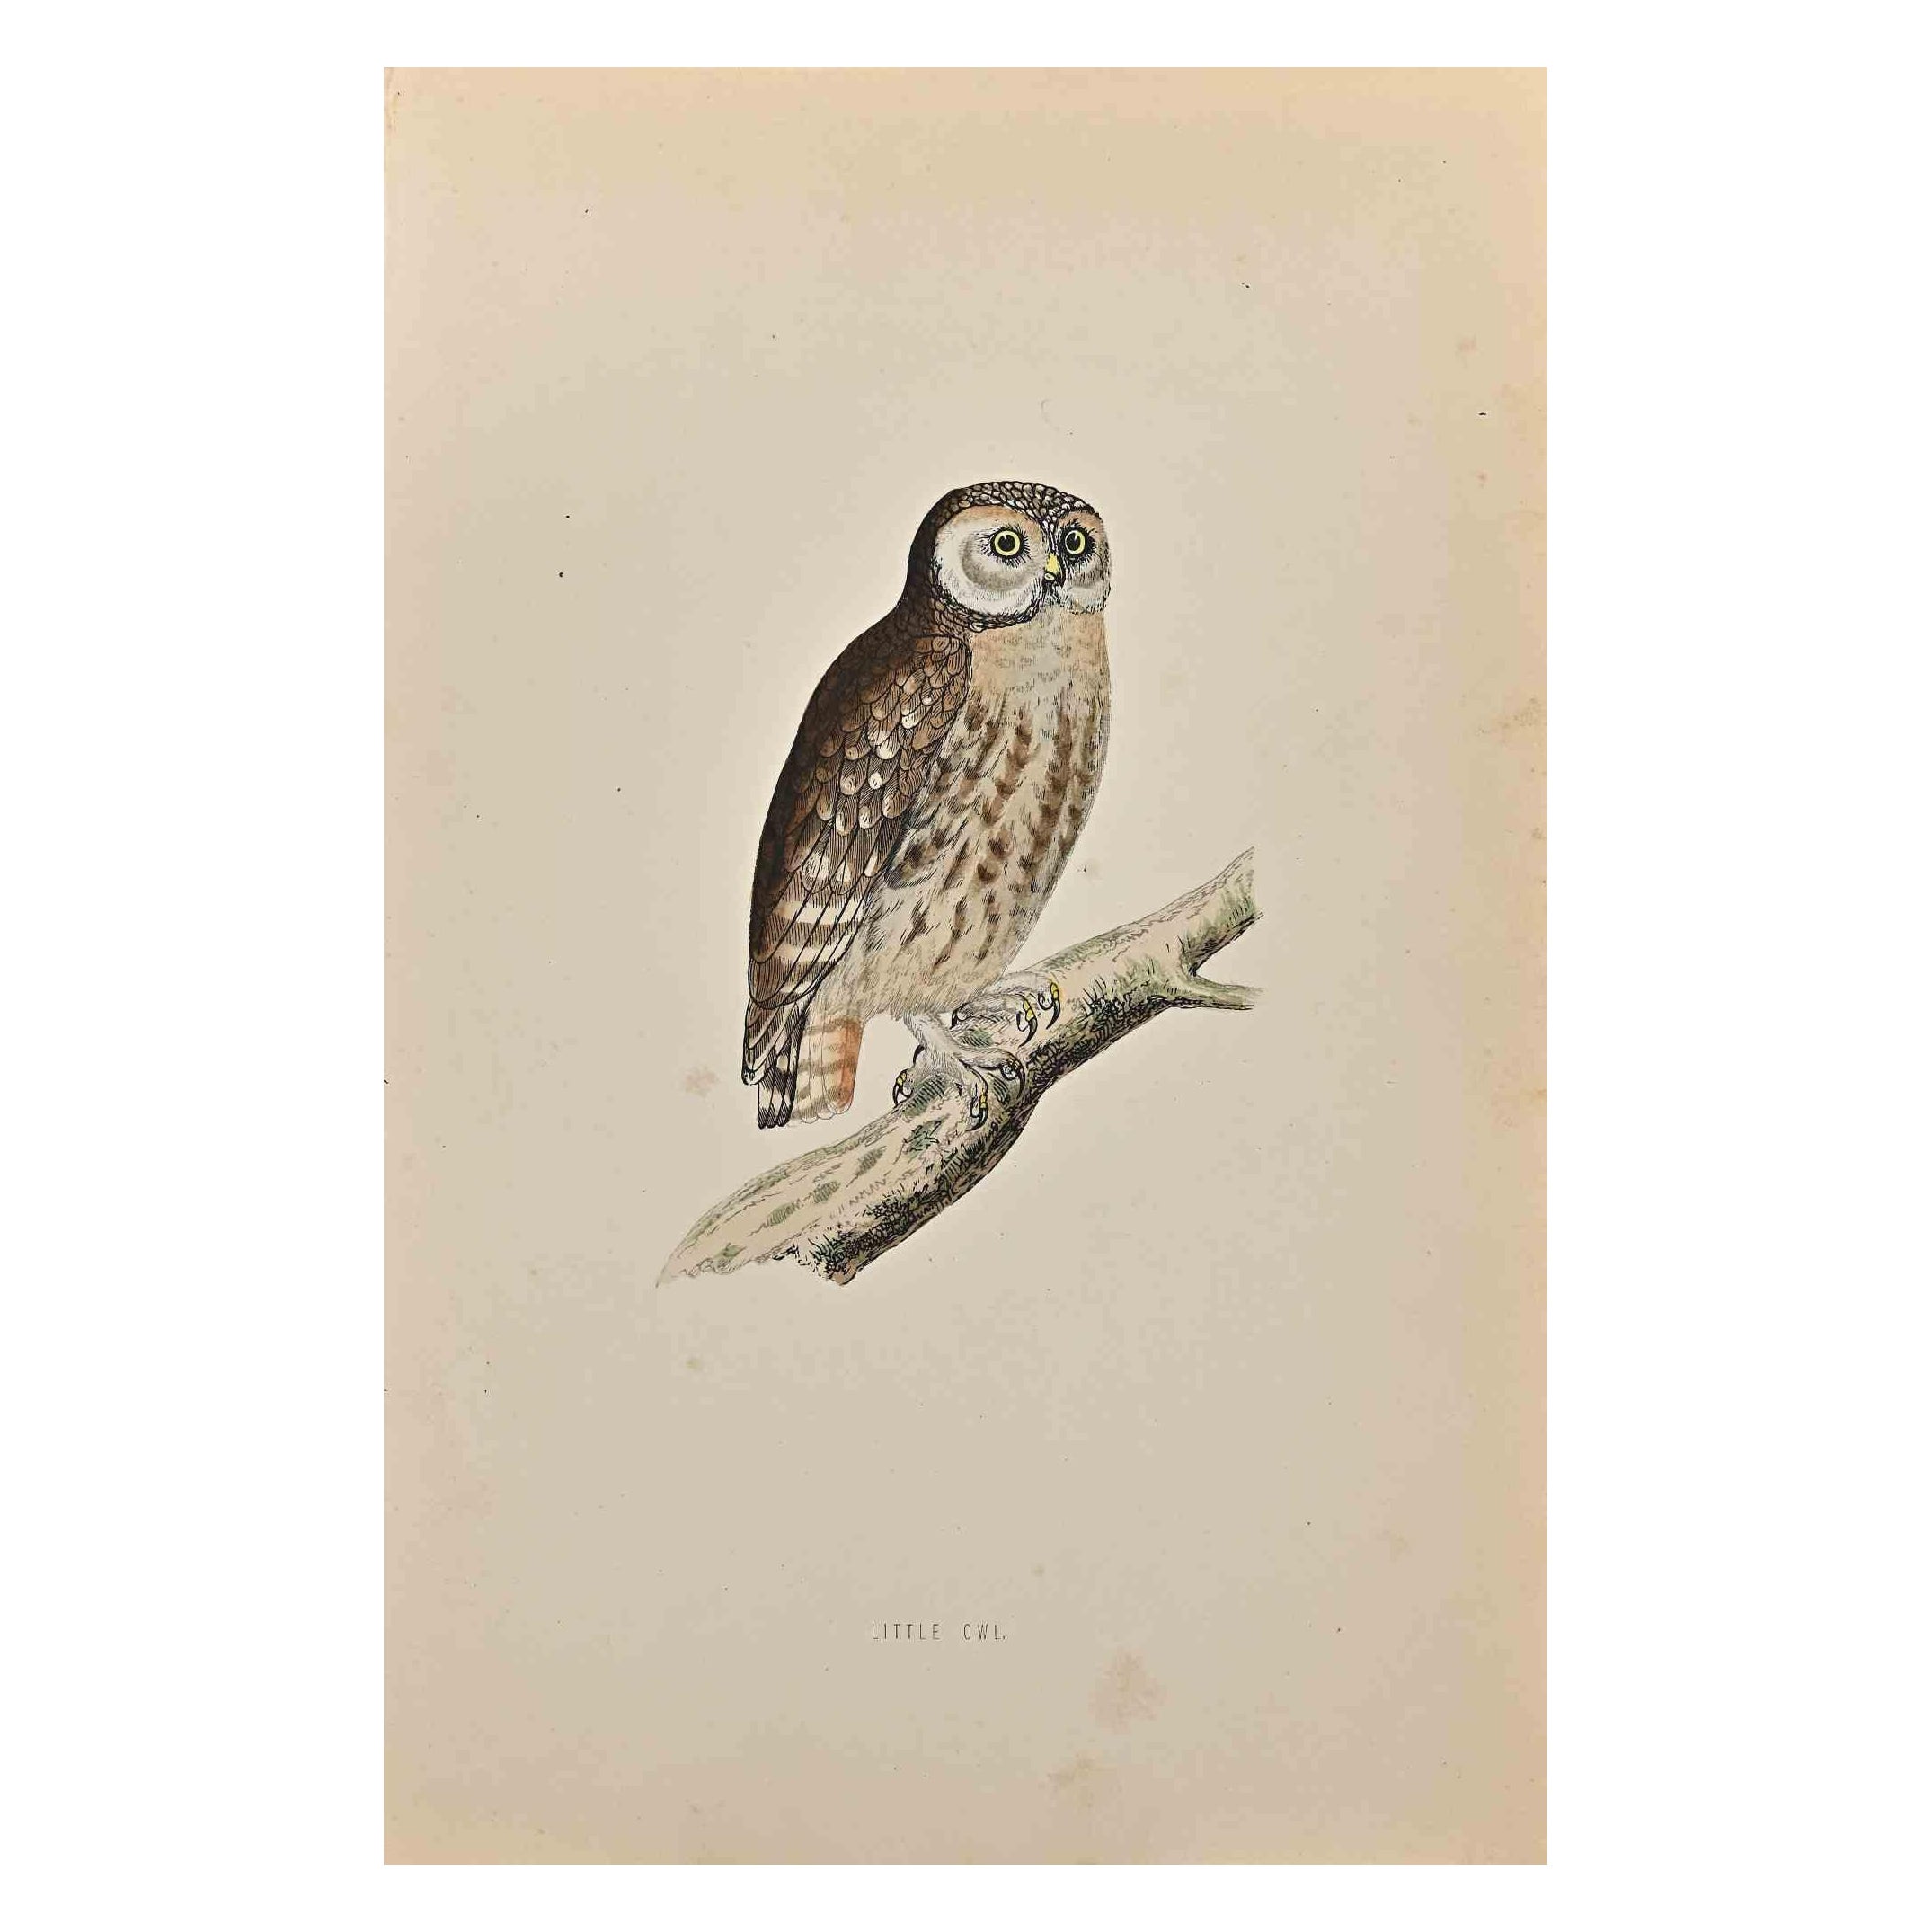 Little Owl est une œuvre d'art moderne réalisée en 1870 par l'artiste britannique Alexander Francis Lydon (1836-1917).

Gravure sur bois sur papier couleur ivoire.

Coloré à la main, publié par Londres, Bell & Sons, 1870.  

Le nom de l'oiseau est